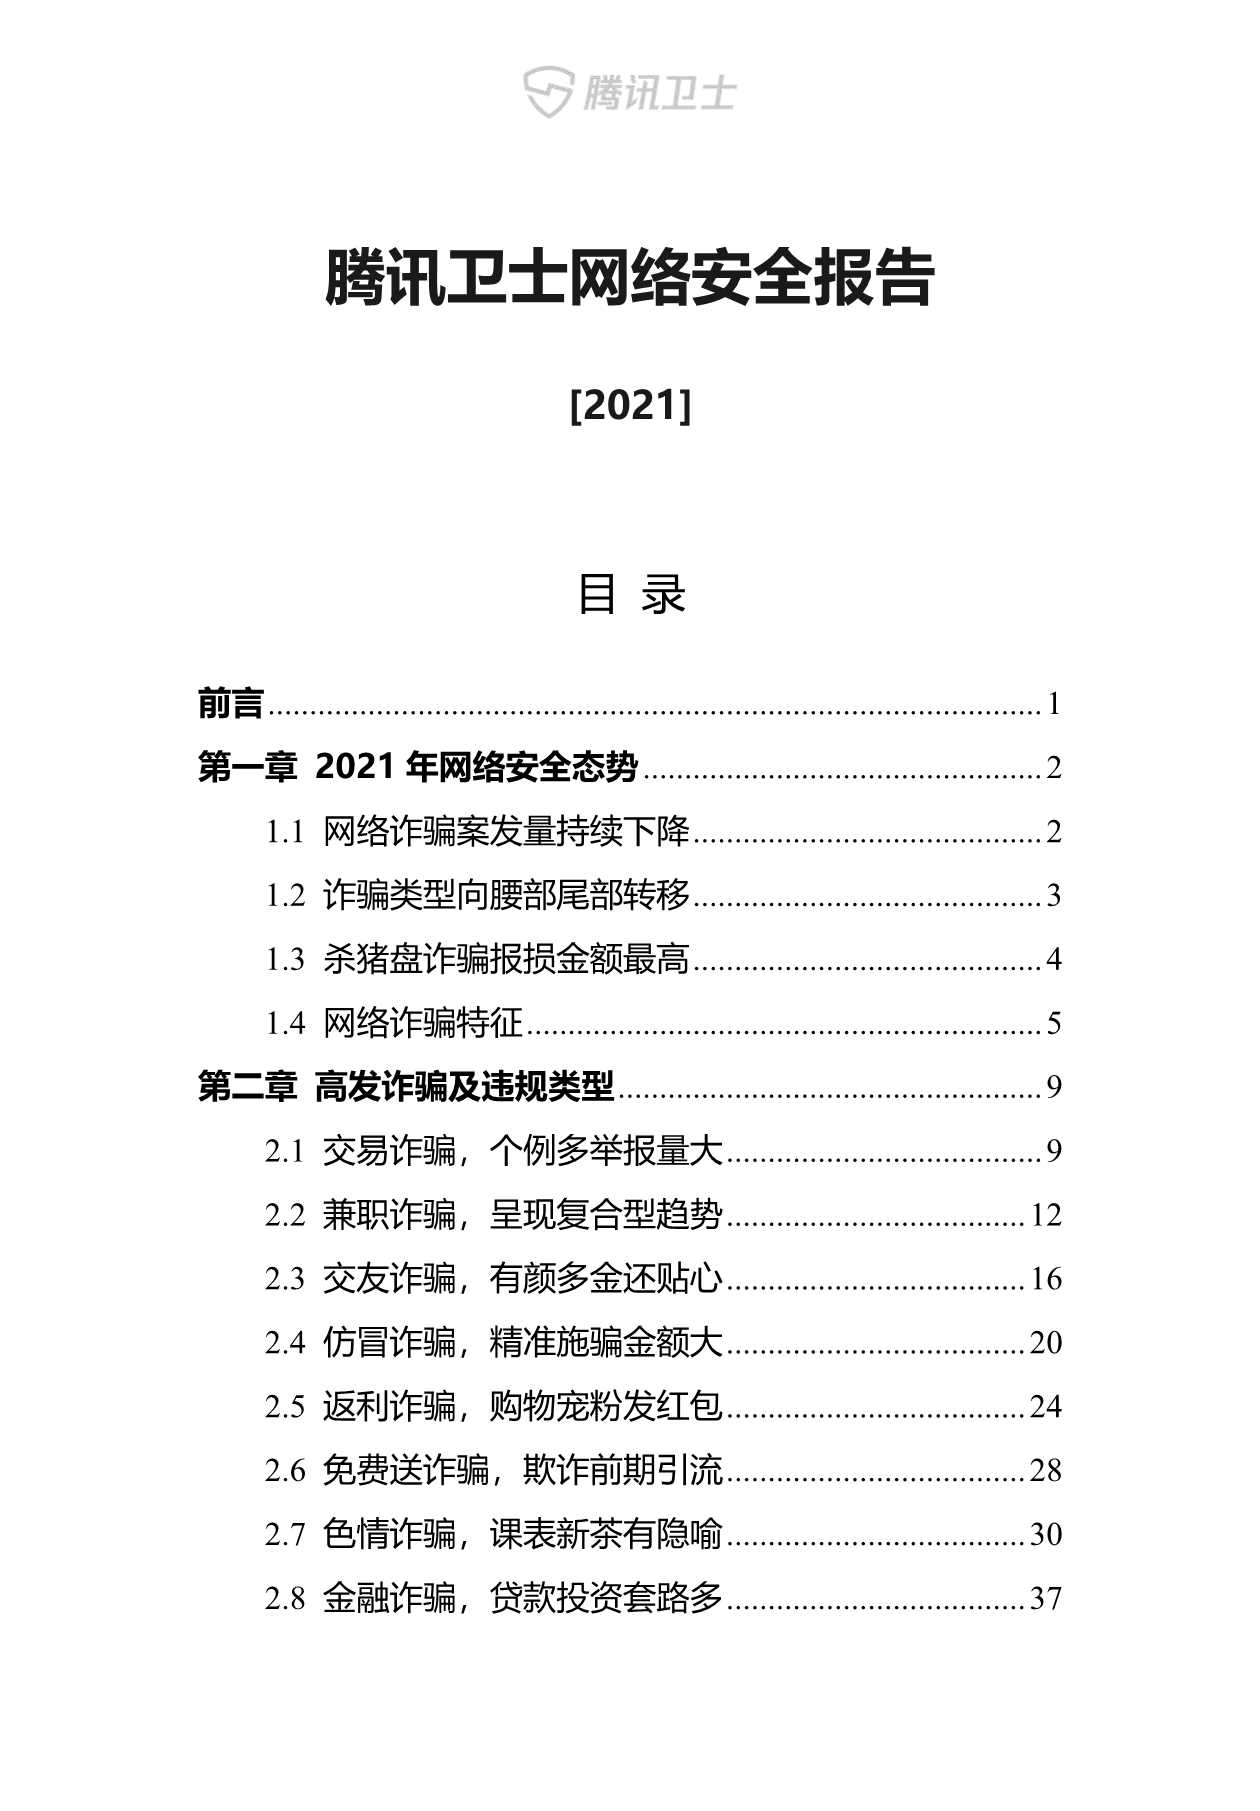 腾讯卫士-2021年网络安全报告-2022.01-90页